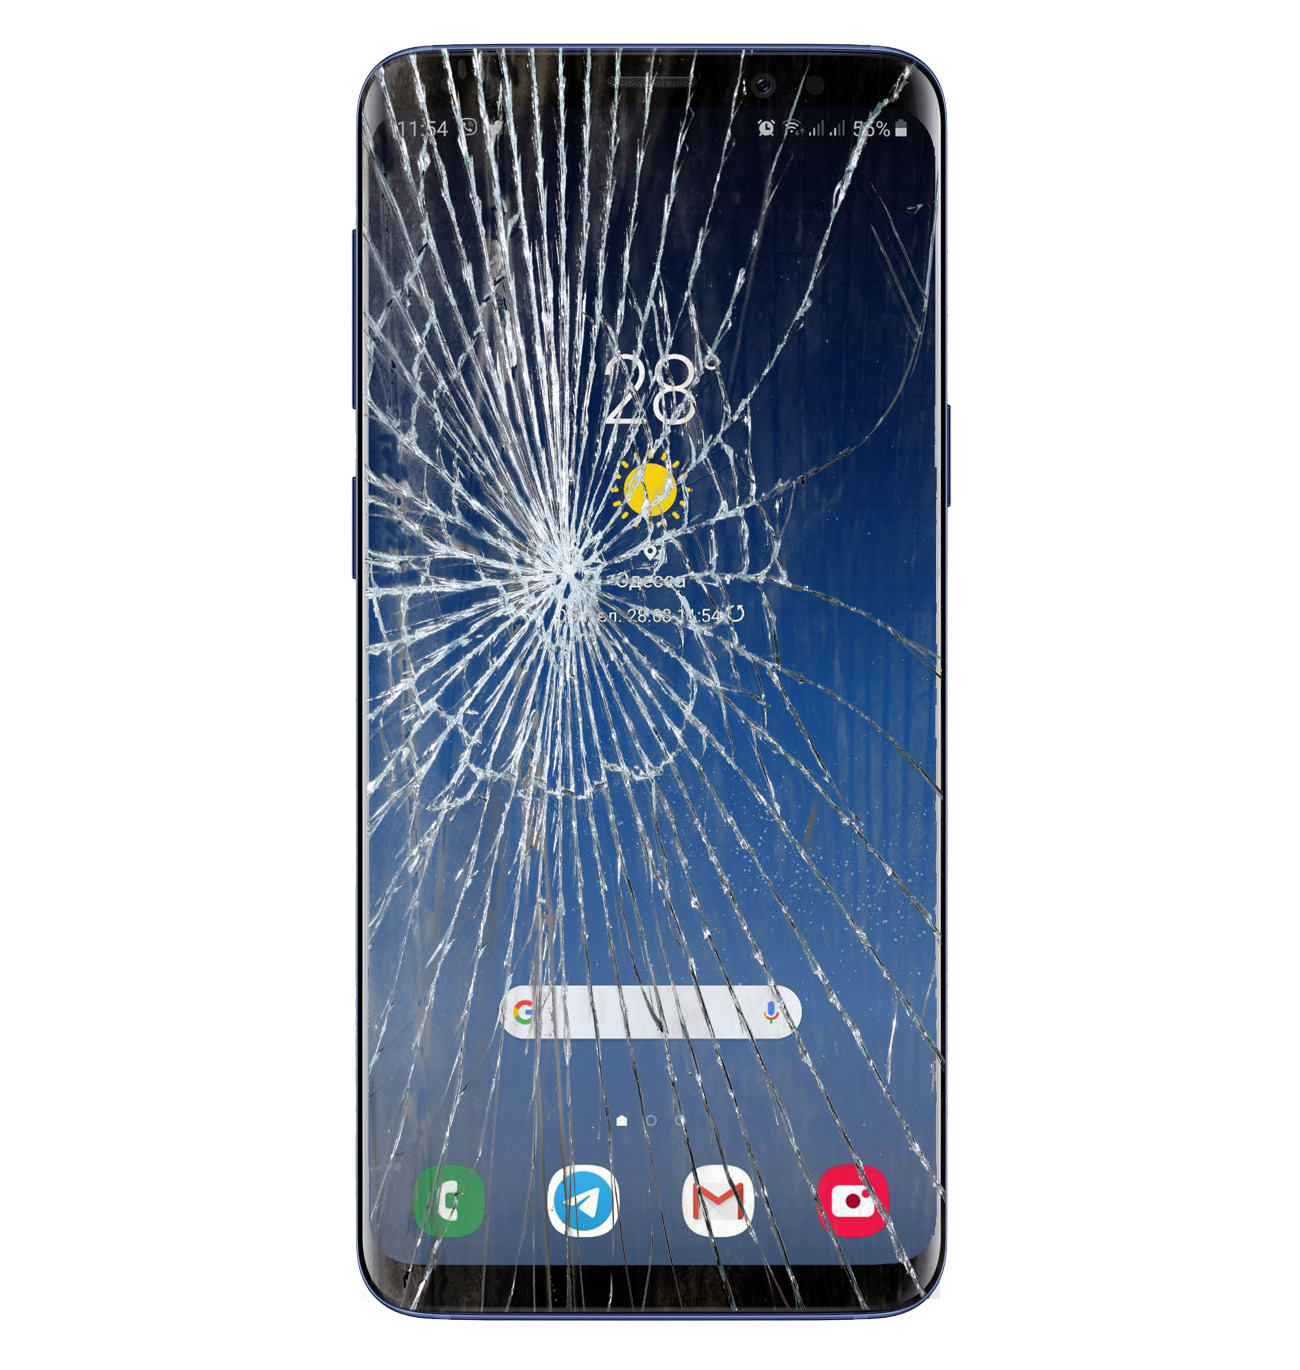 Samsung разбитый экран. Самсунг а52 разбитый экран. Разбит экран самсунг а32. Стекло на самсунг а 31. Разбитый дисплей самсунг f125.